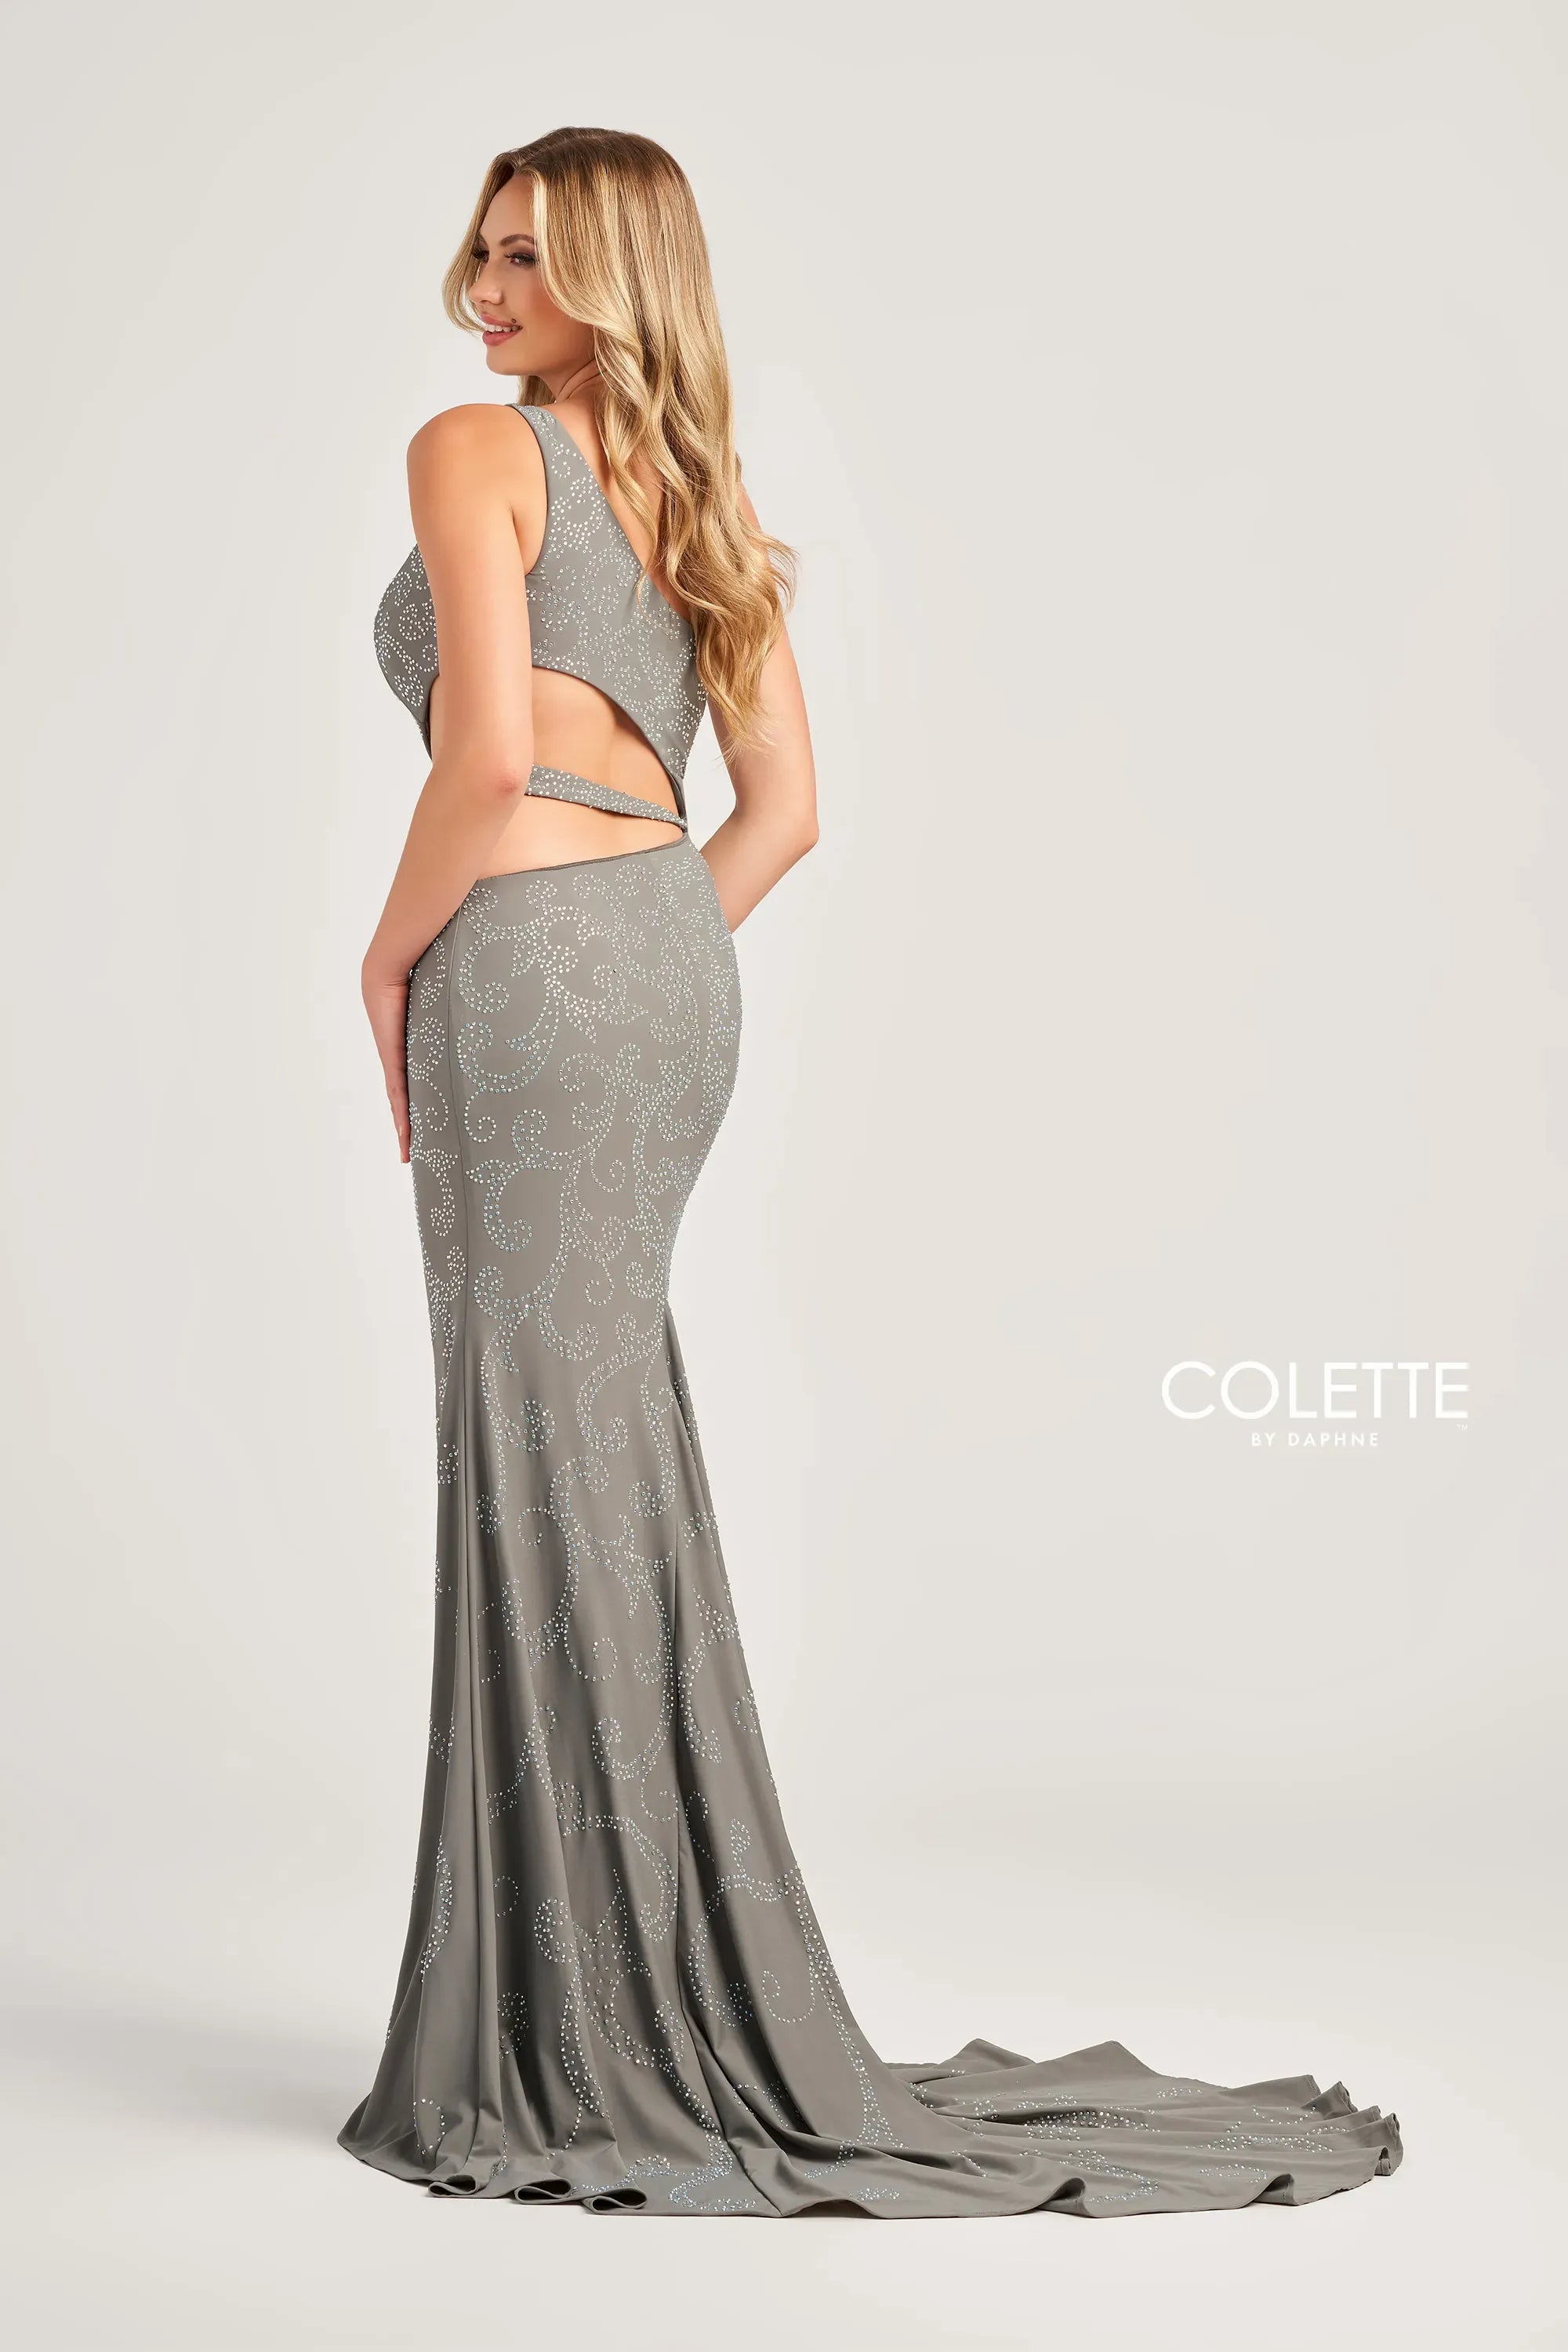 Colette CL5281